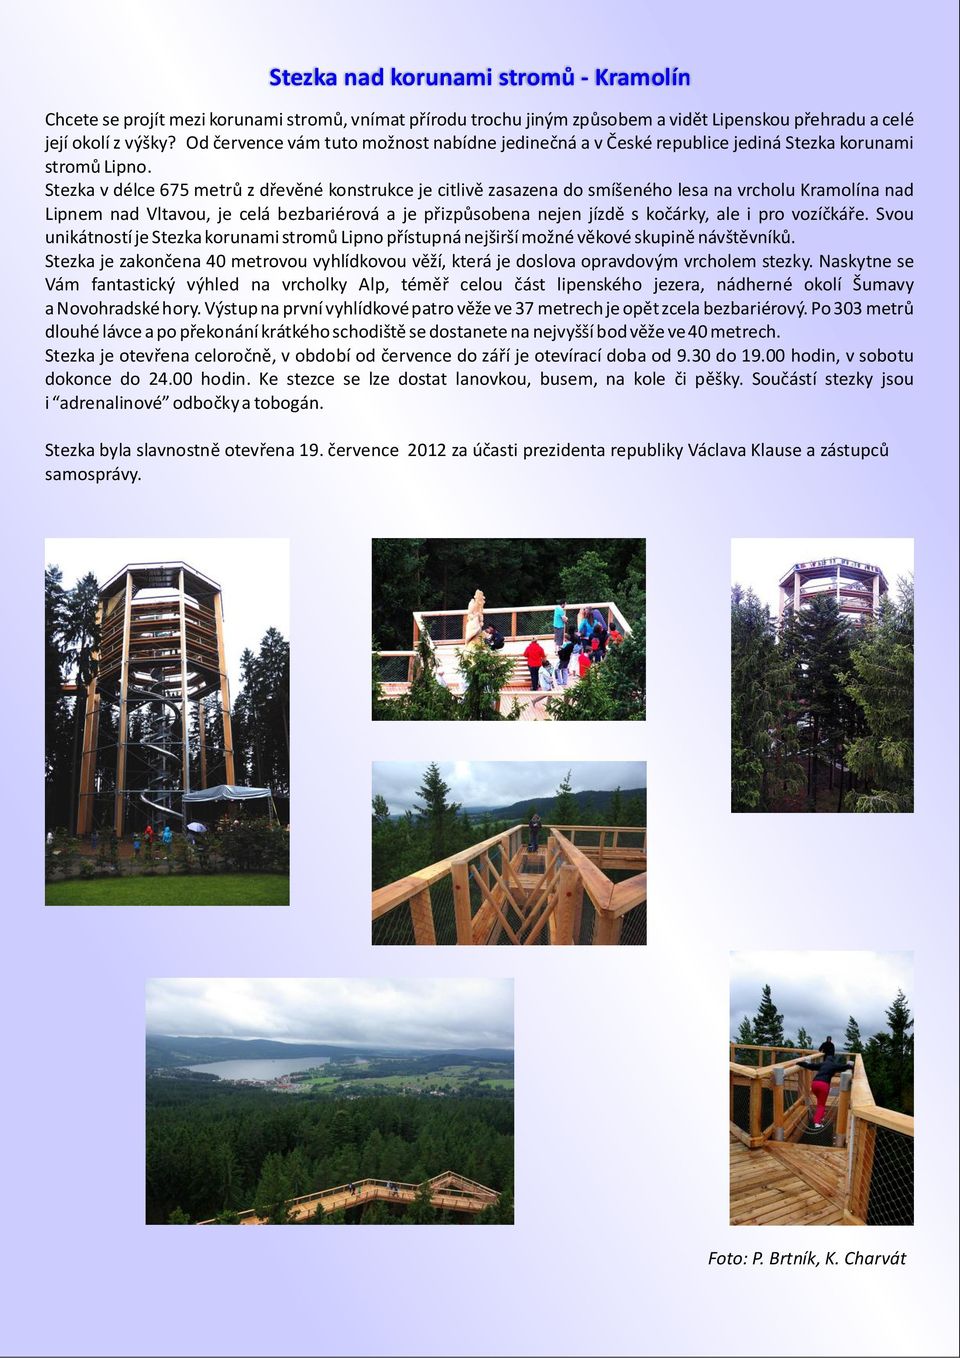 Stezka v délce 675 metrů z dřevěné konstrukce je citlivě zasazena do smíšeného lesa na vrcholu Kramolína nad Lipnem nad Vltavou, je celá bezbariérová a je přizpůsobena nejen jízdě s kočárky, ale i